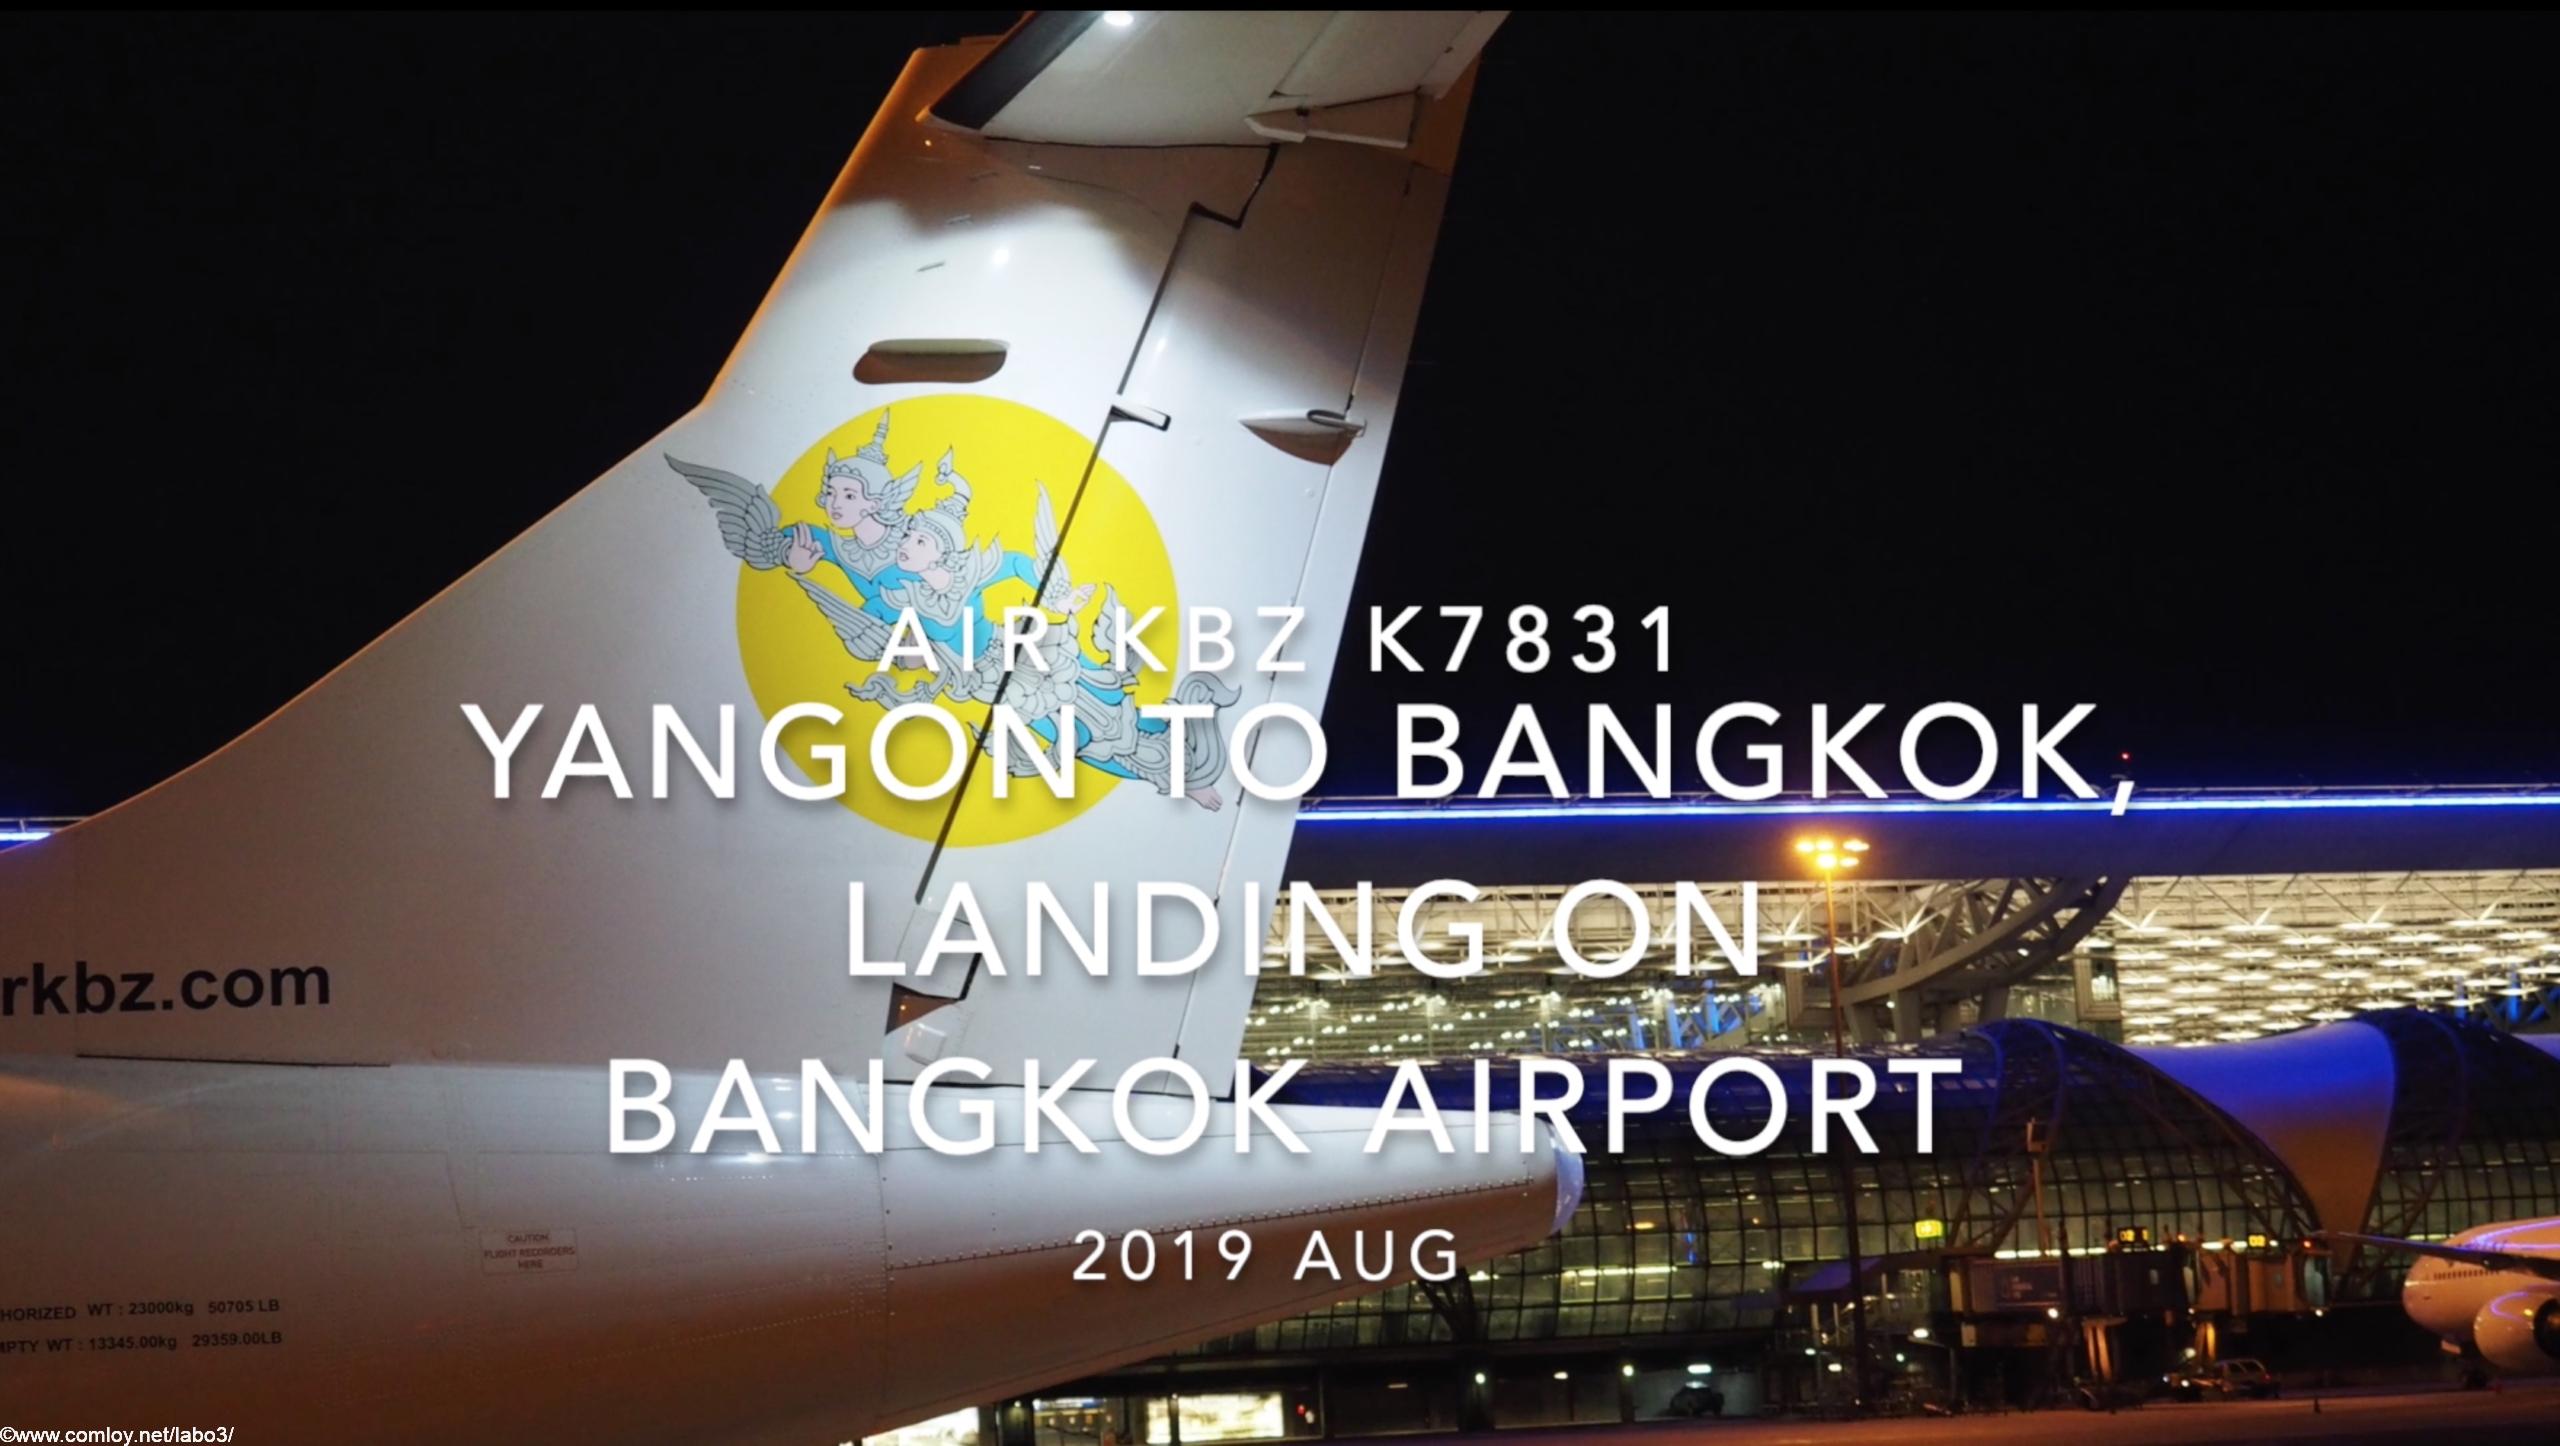 【機内から離着陸映像】2019 AUG Air KBZ K7831 YANGON to BANGKOK, Landing on Bangkok Airport